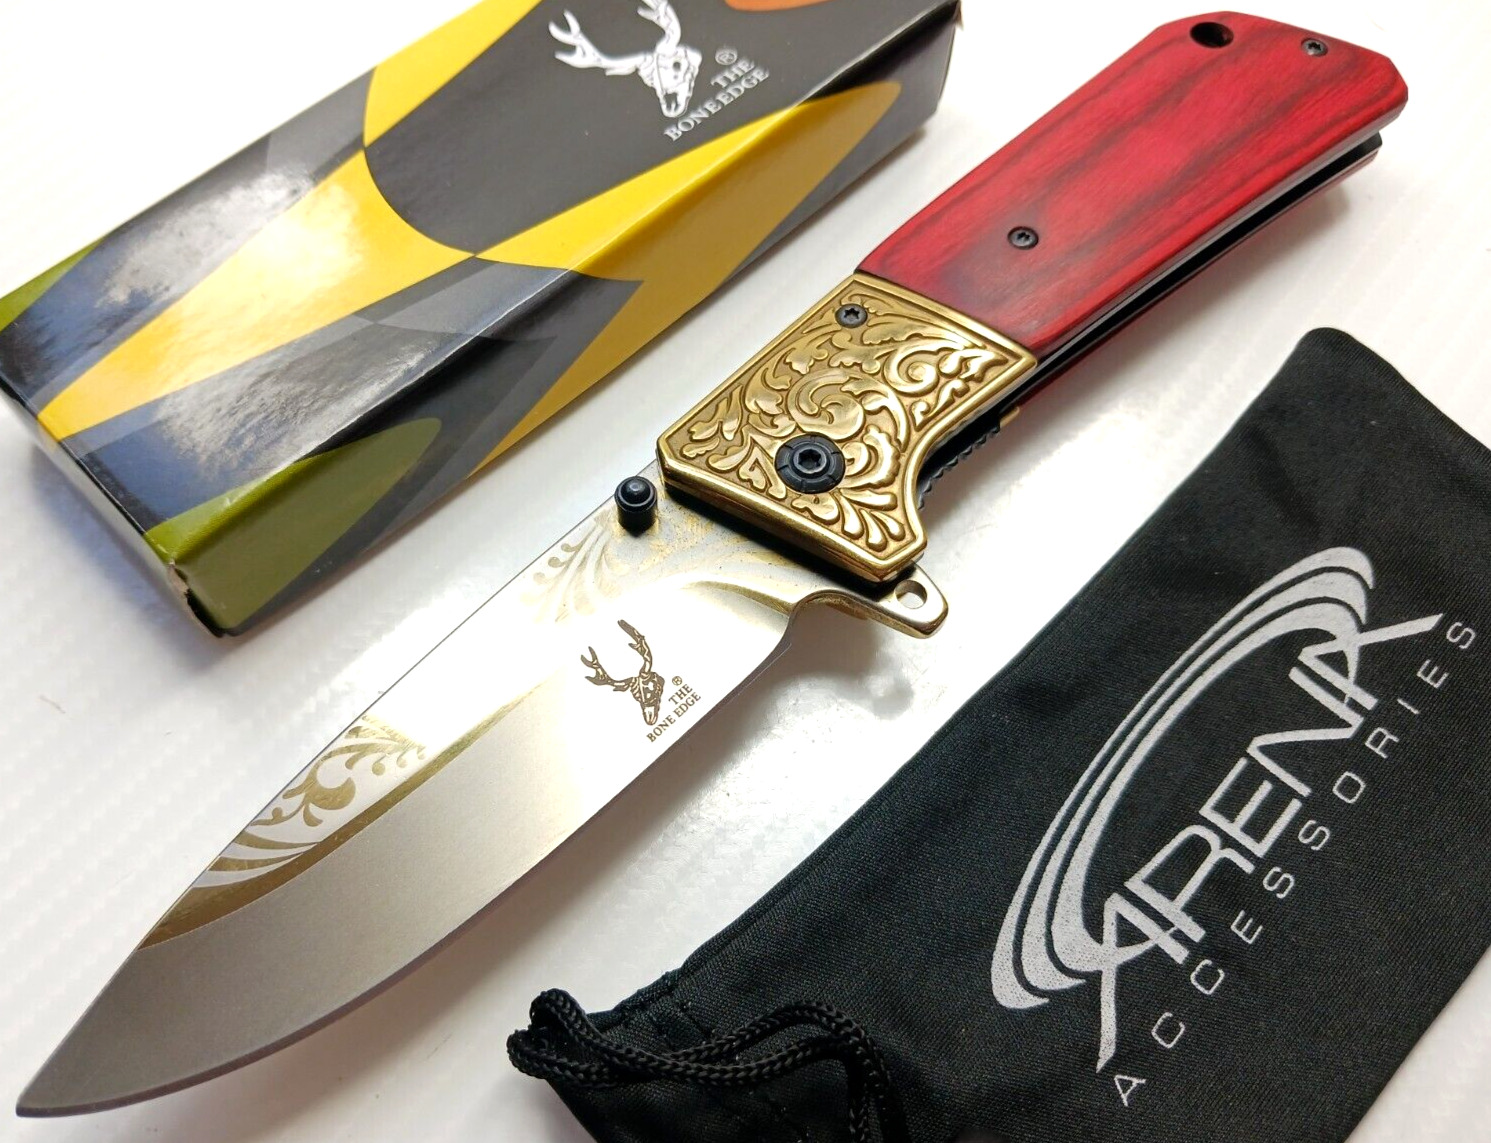 Honeysuckle Scrollwork Spring Assisted EDC Pocket Knife Ornate Blade Wood